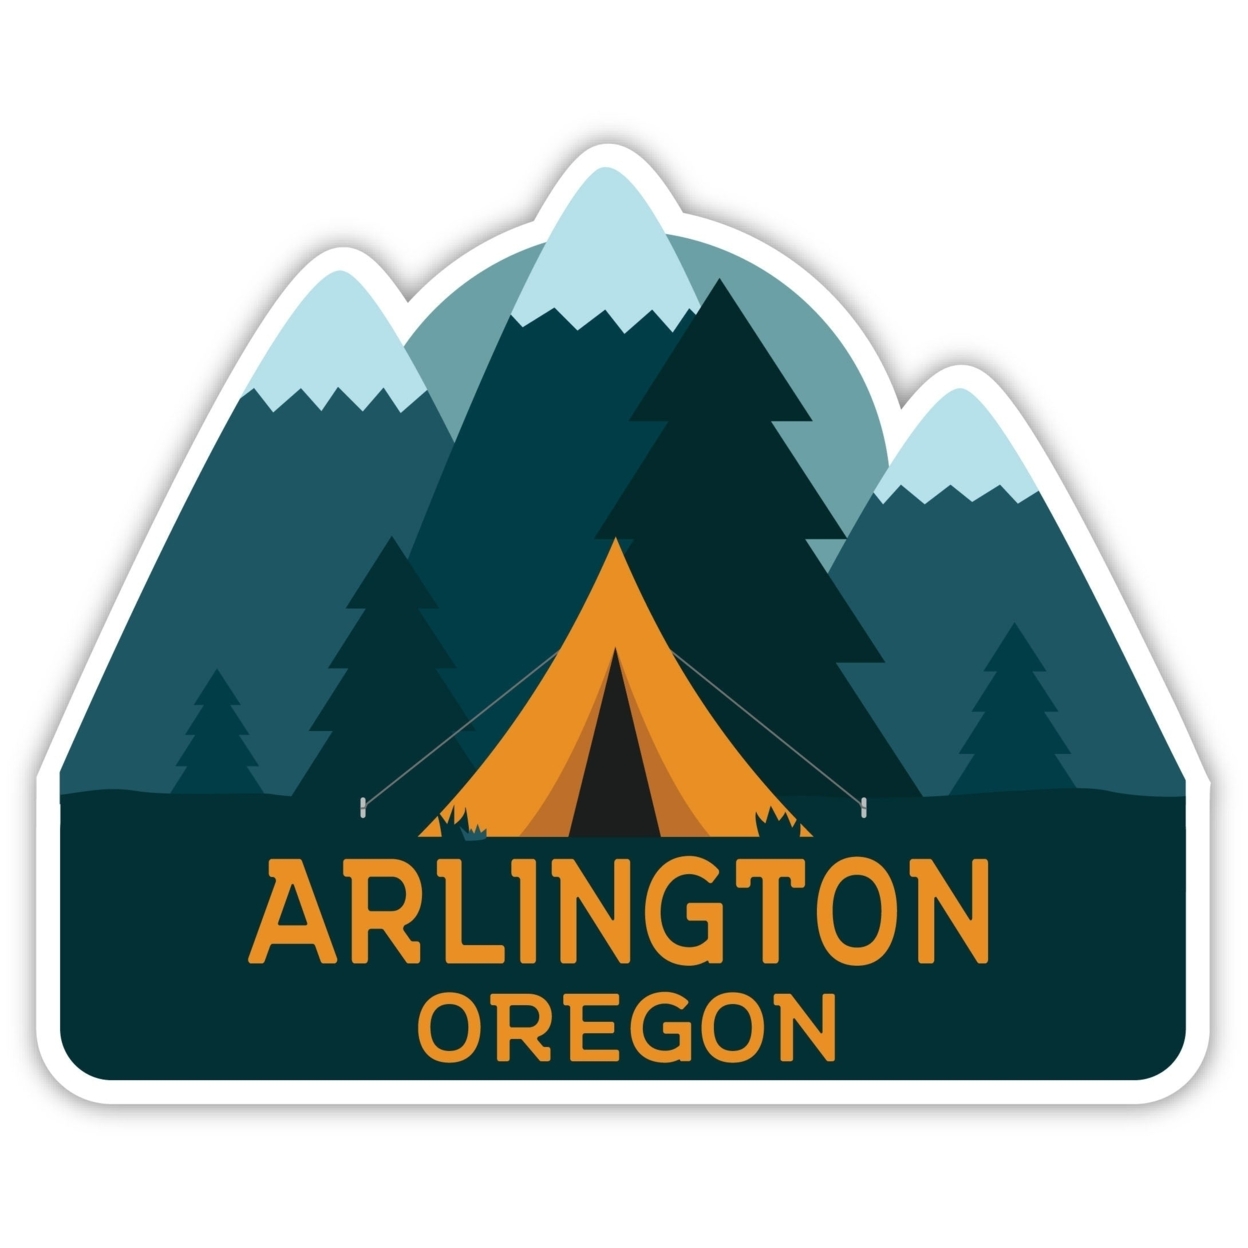 Arlington Oregon Souvenir Decorative Stickers (Choose Theme And Size) - 4-Pack, 12-Inch, Tent